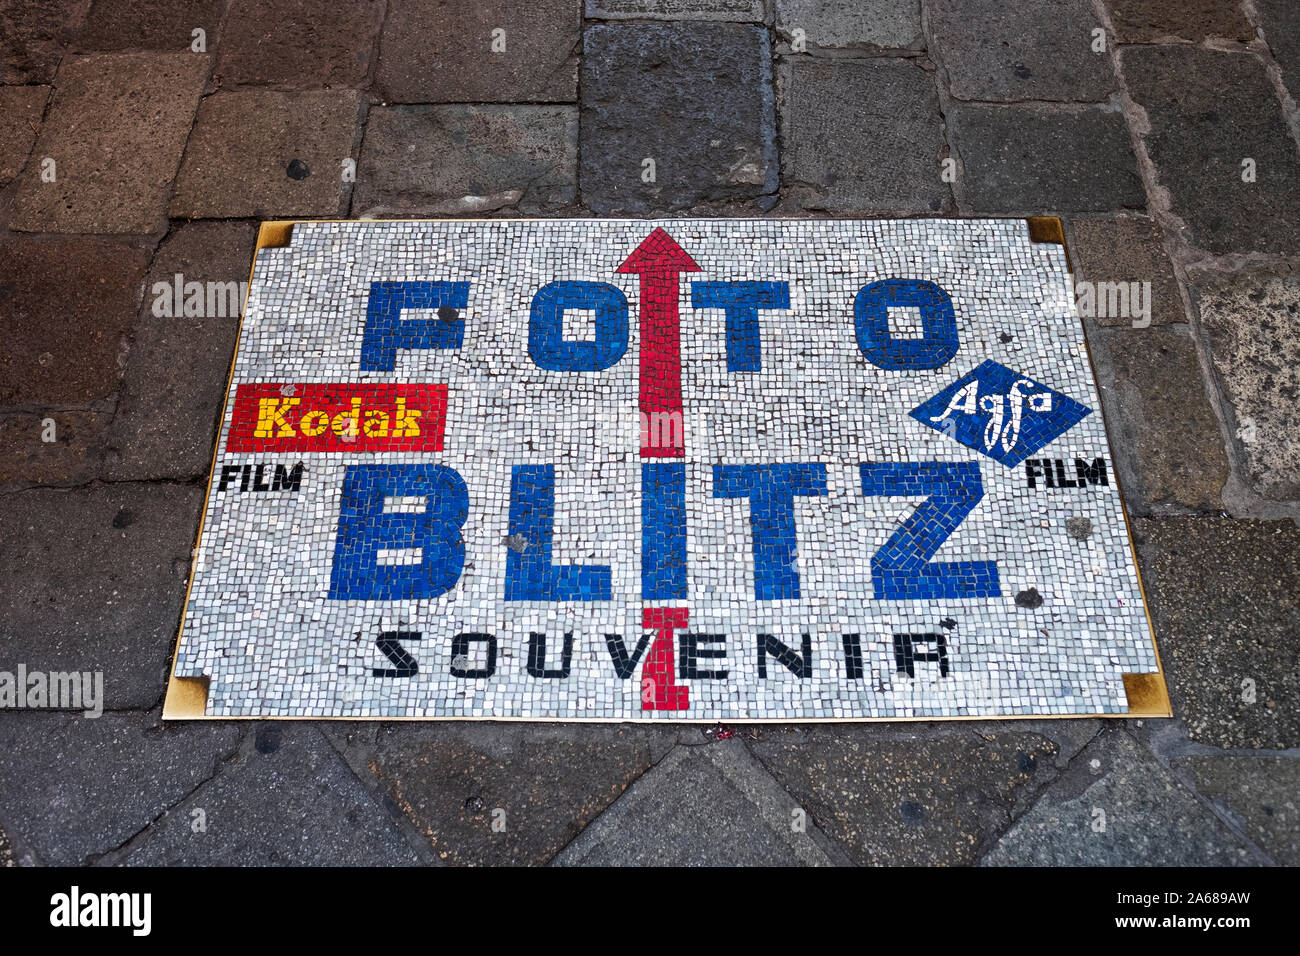 Une mosaïque signe sur le terrain pour les résidents et touristes de pointage Foto Blitz, un appareil photo, film & digital imaging store sur Calle dei Baloni à Venise, Italie Banque D'Images